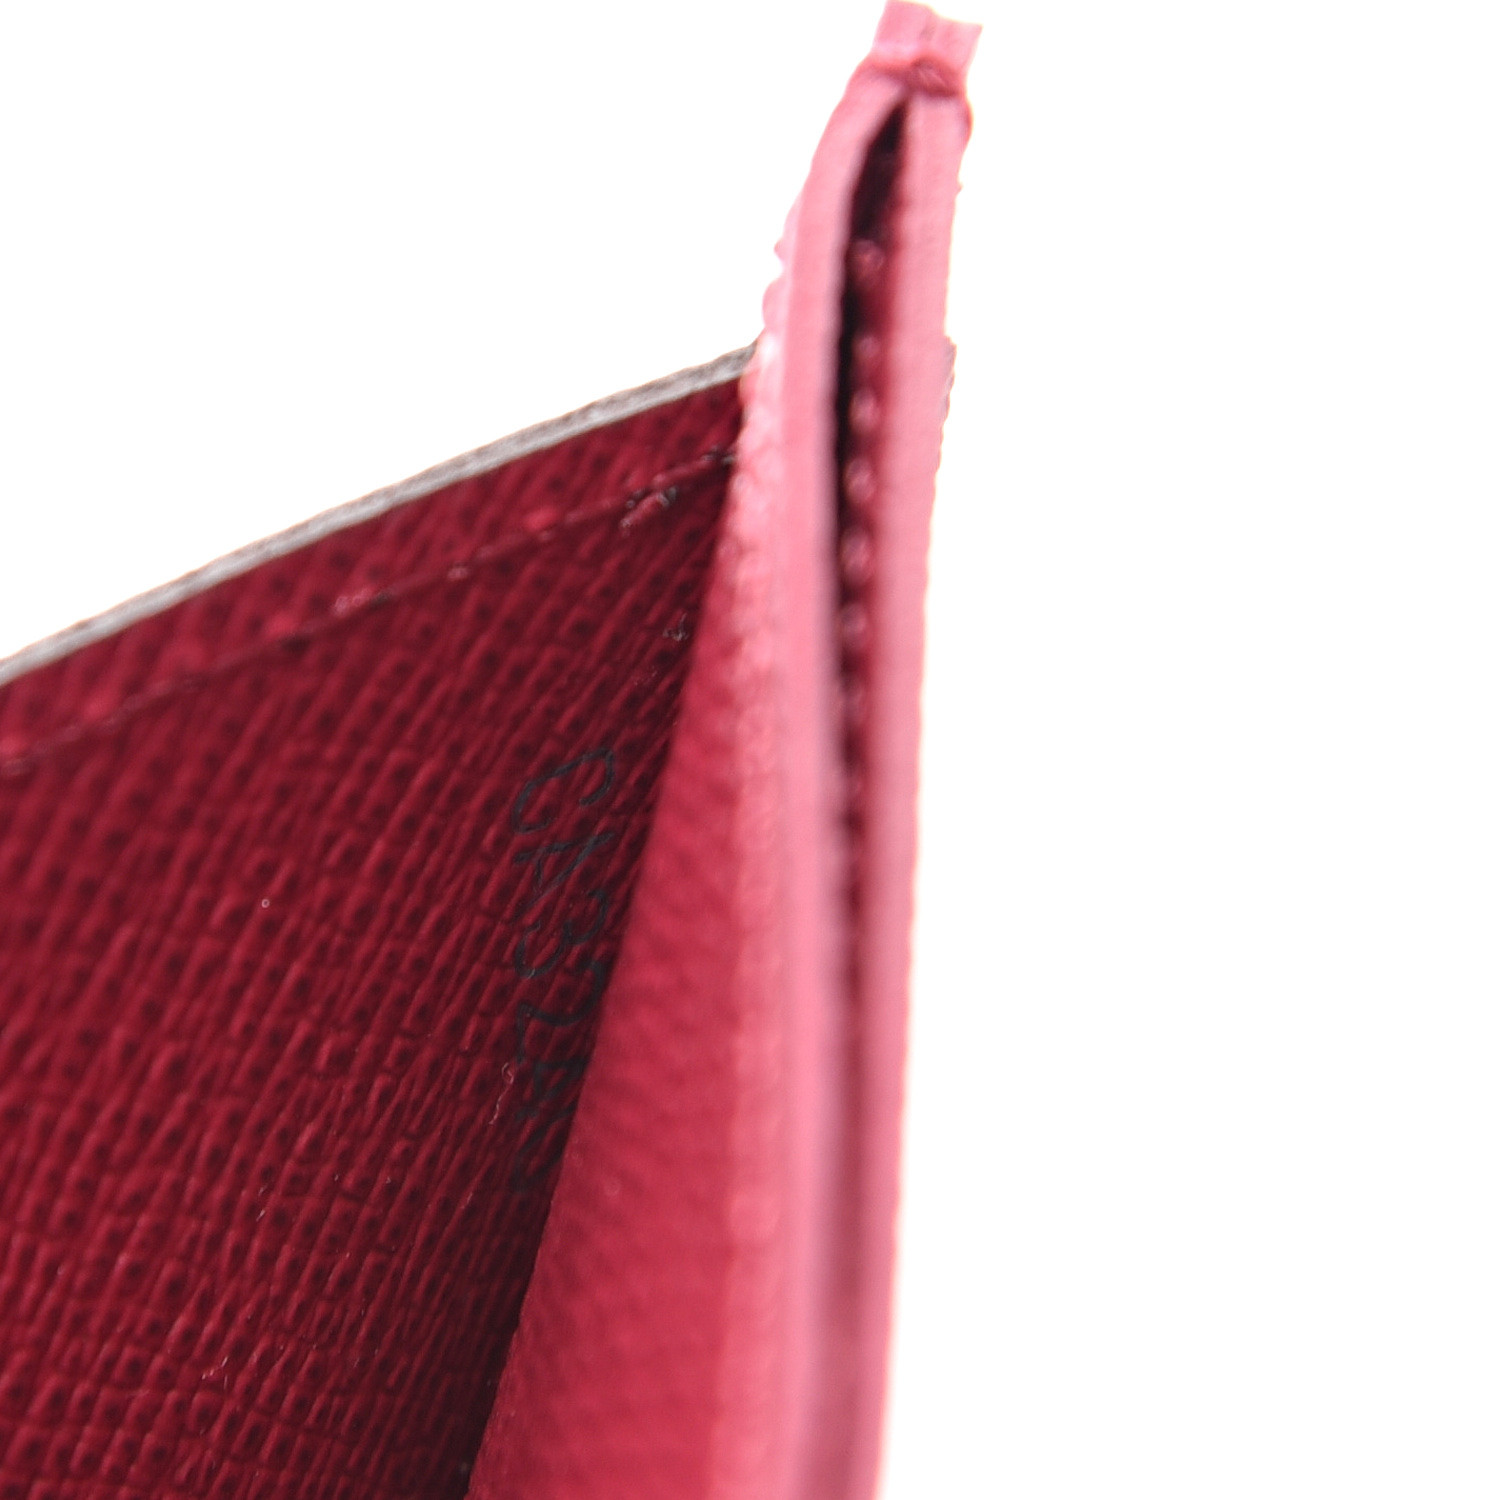 Louis Vuitton Card Slip Holder in Monogram Fuchsia - SOLD